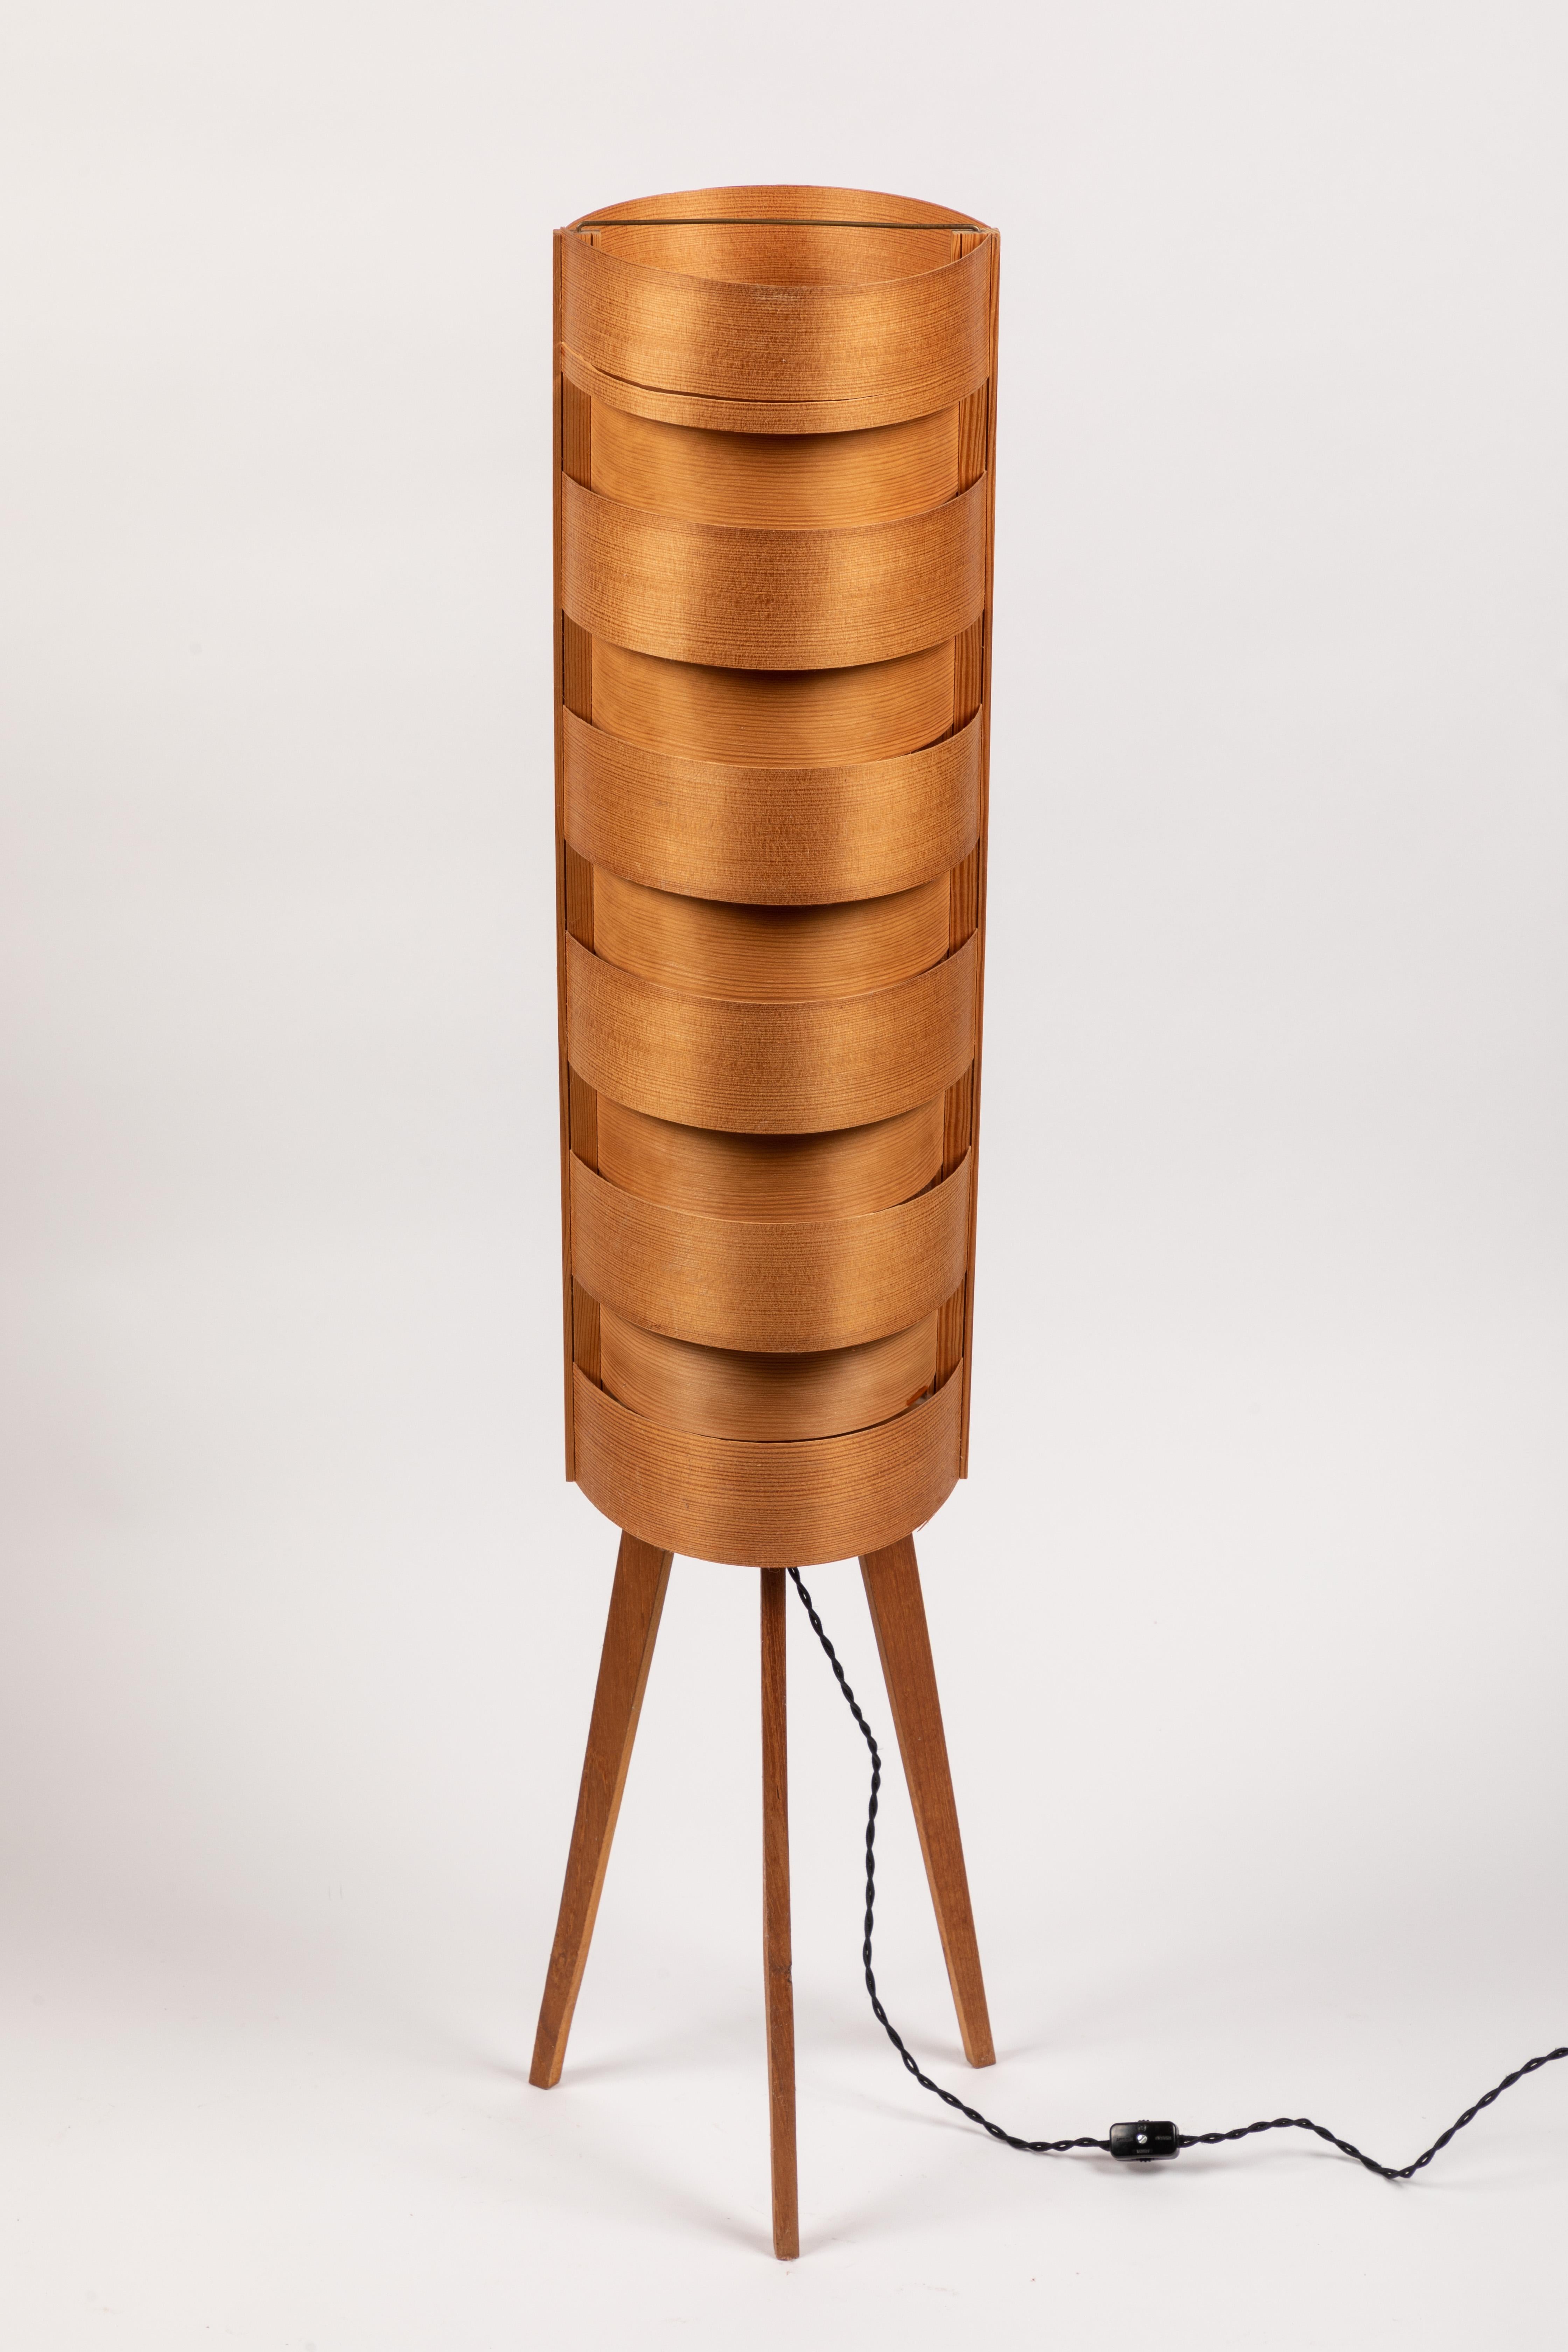 1960s Hans-Agne Jakobsson Wood Tripod Floor Lamp for AB Ellysett For Sale 1